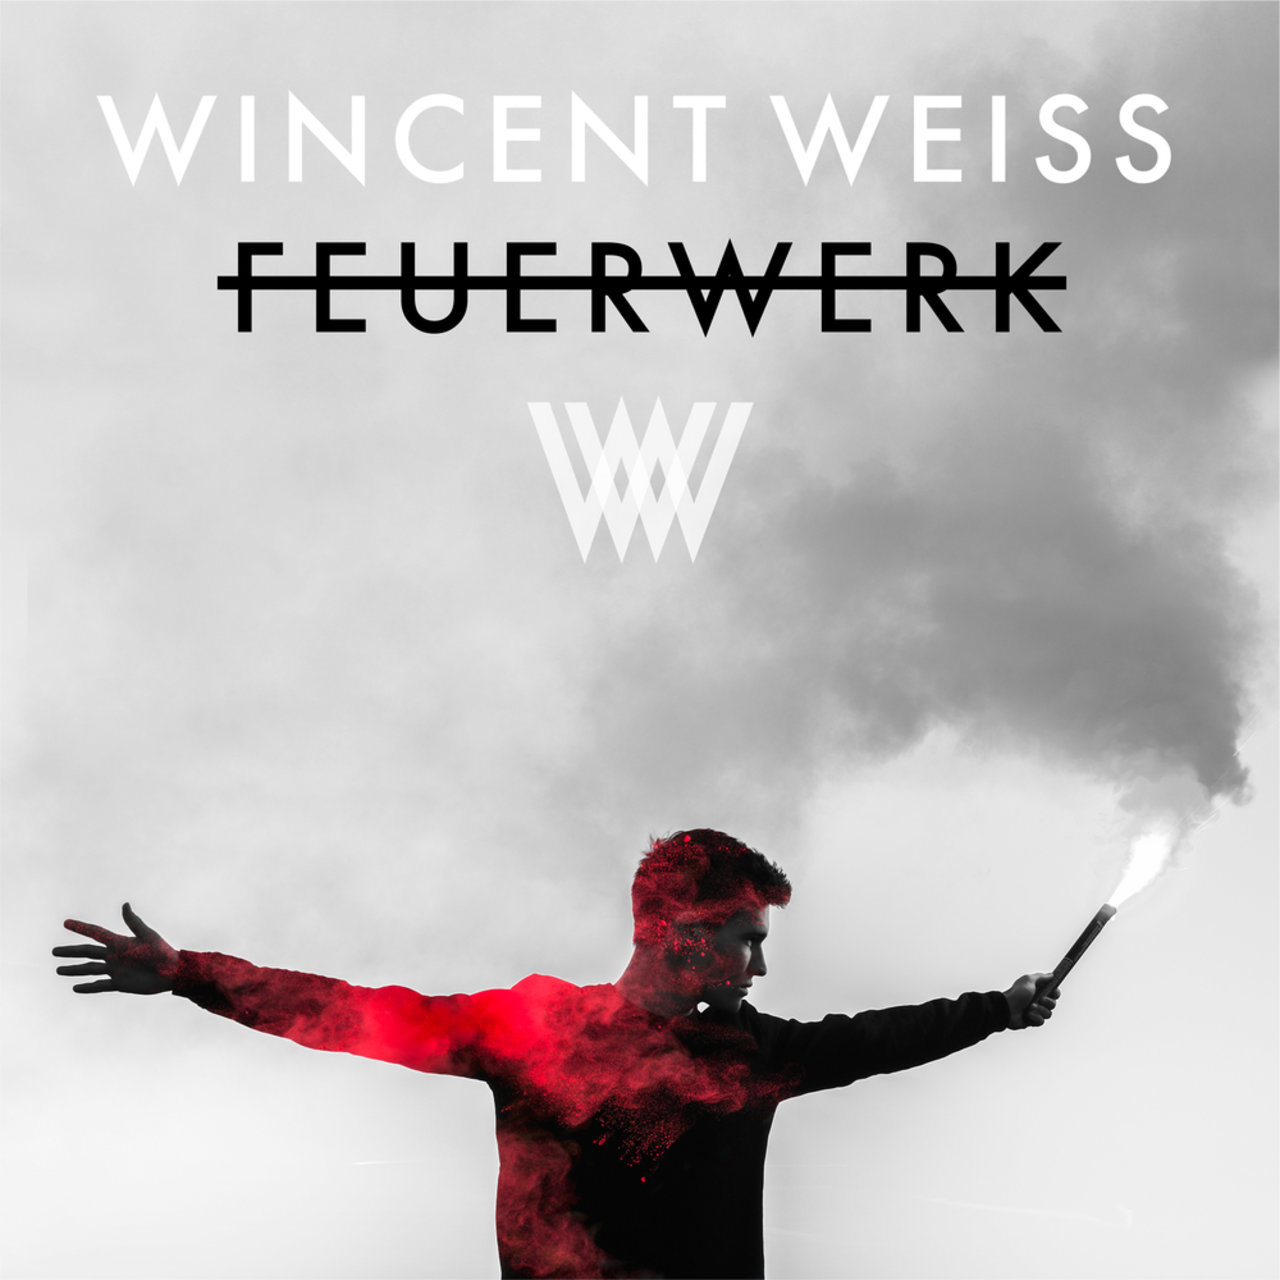 Wincent Weiss — Feuerwerk cover artwork